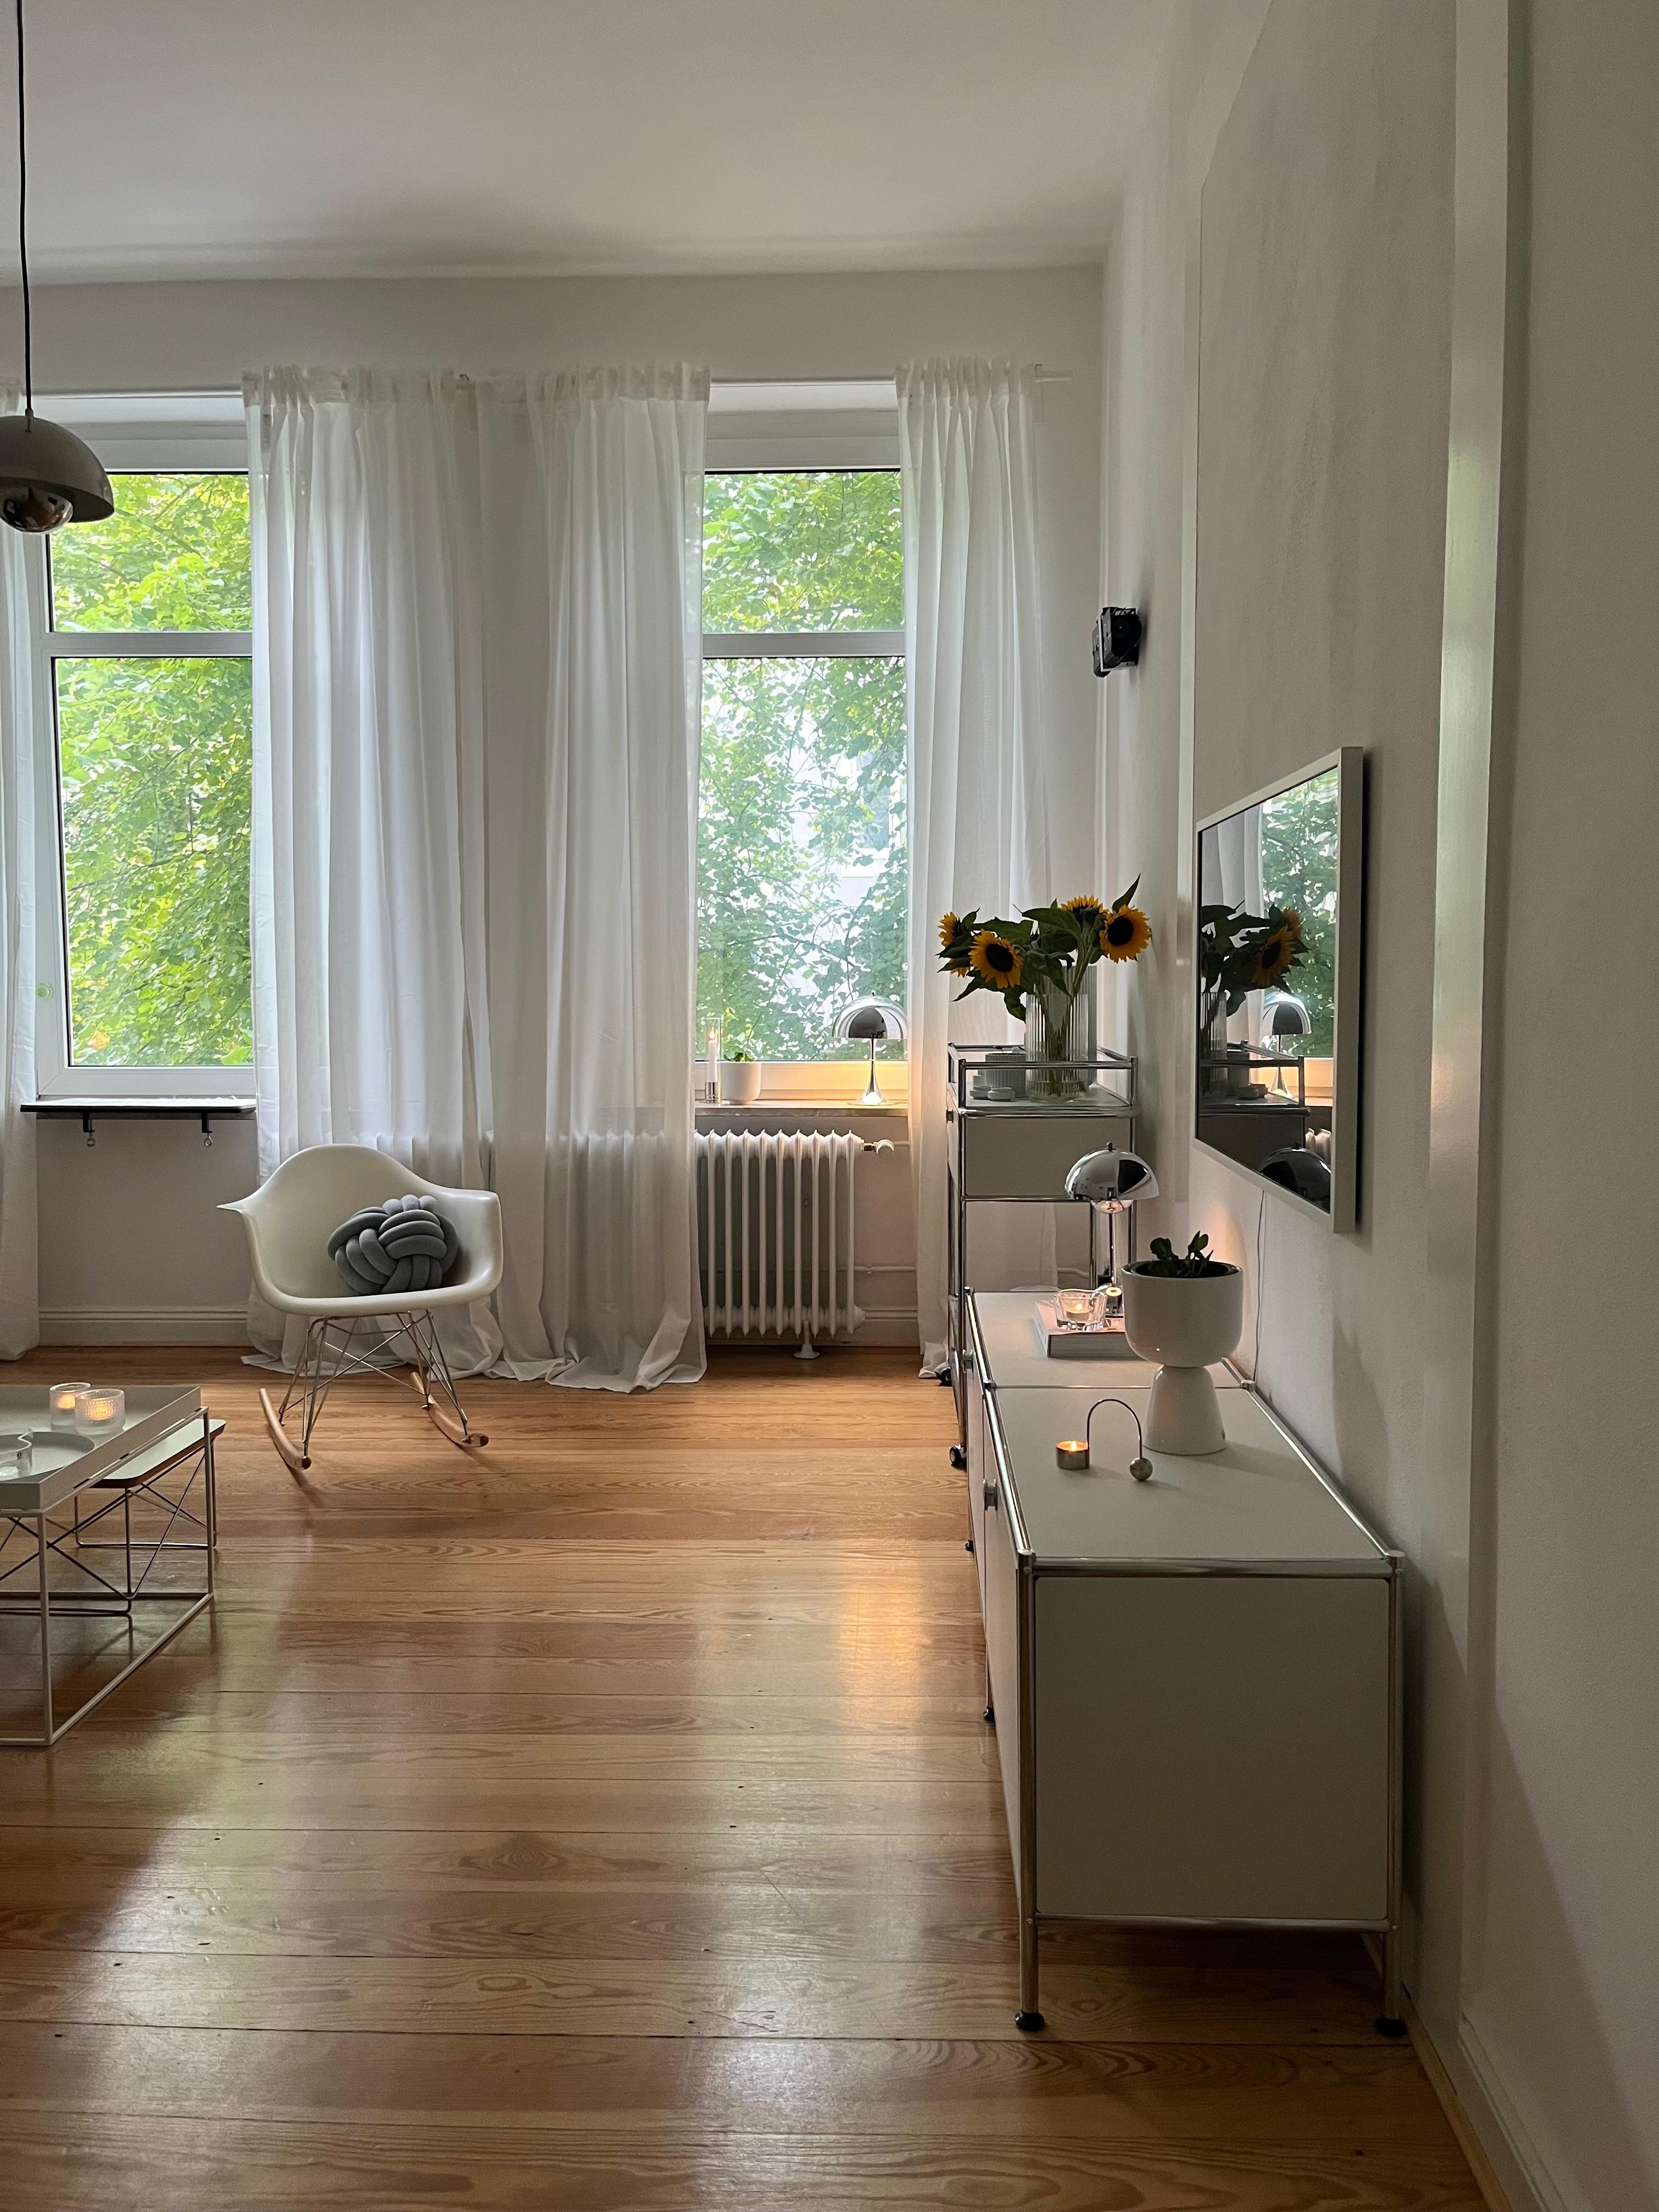 #wohnzimmer #sonnenblumen #skandinavischwohnen #hyggehome #danishdesign 